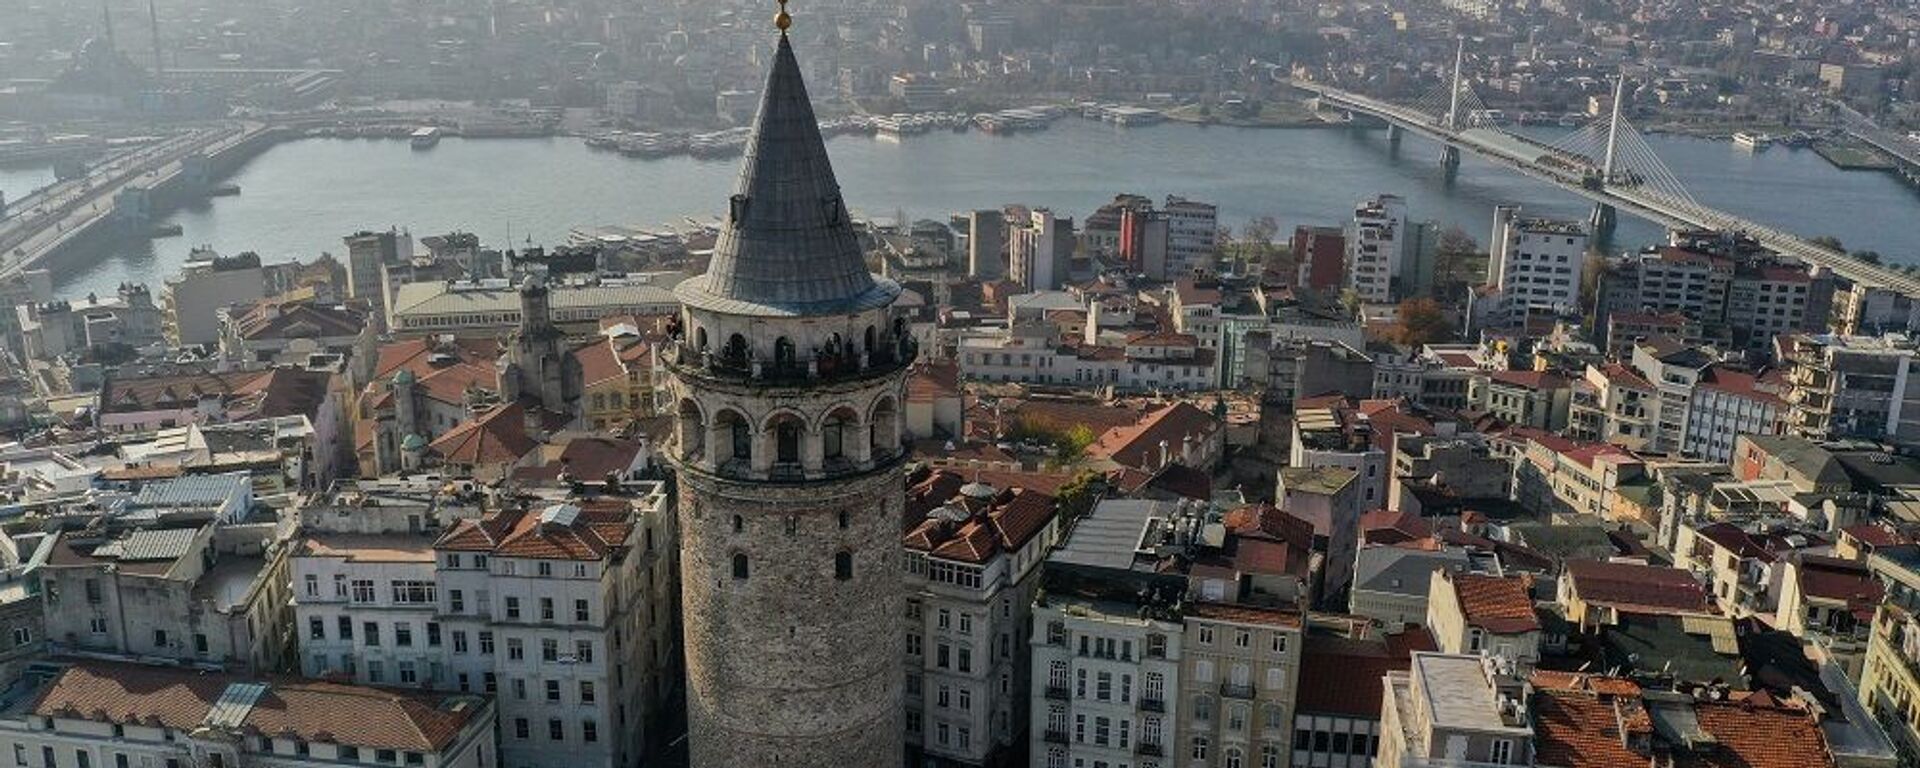 İstanbul, Galata Kulesi - Sputnik Türkiye, 1920, 04.07.2021